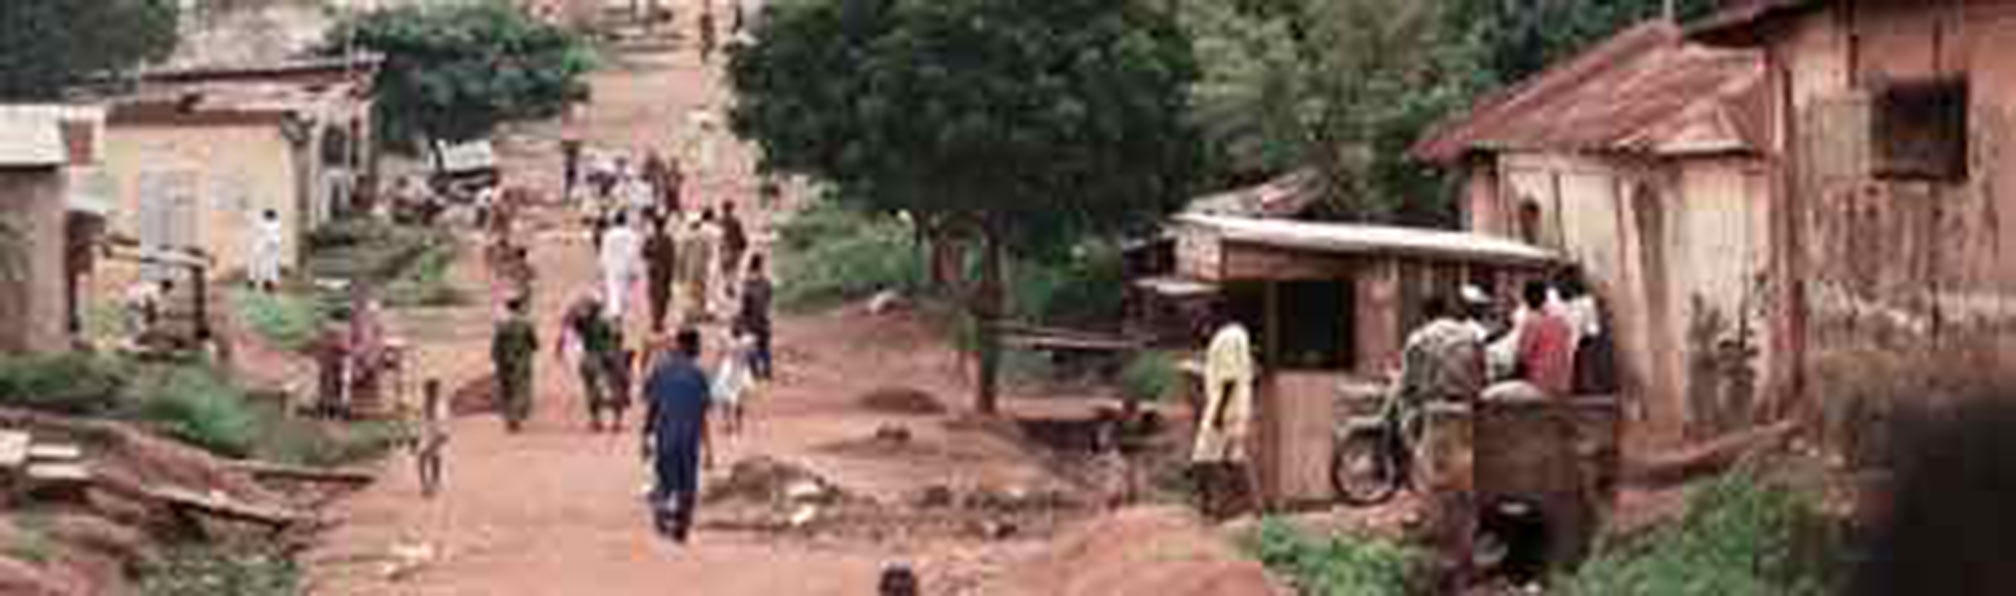 street scene West African village 1968